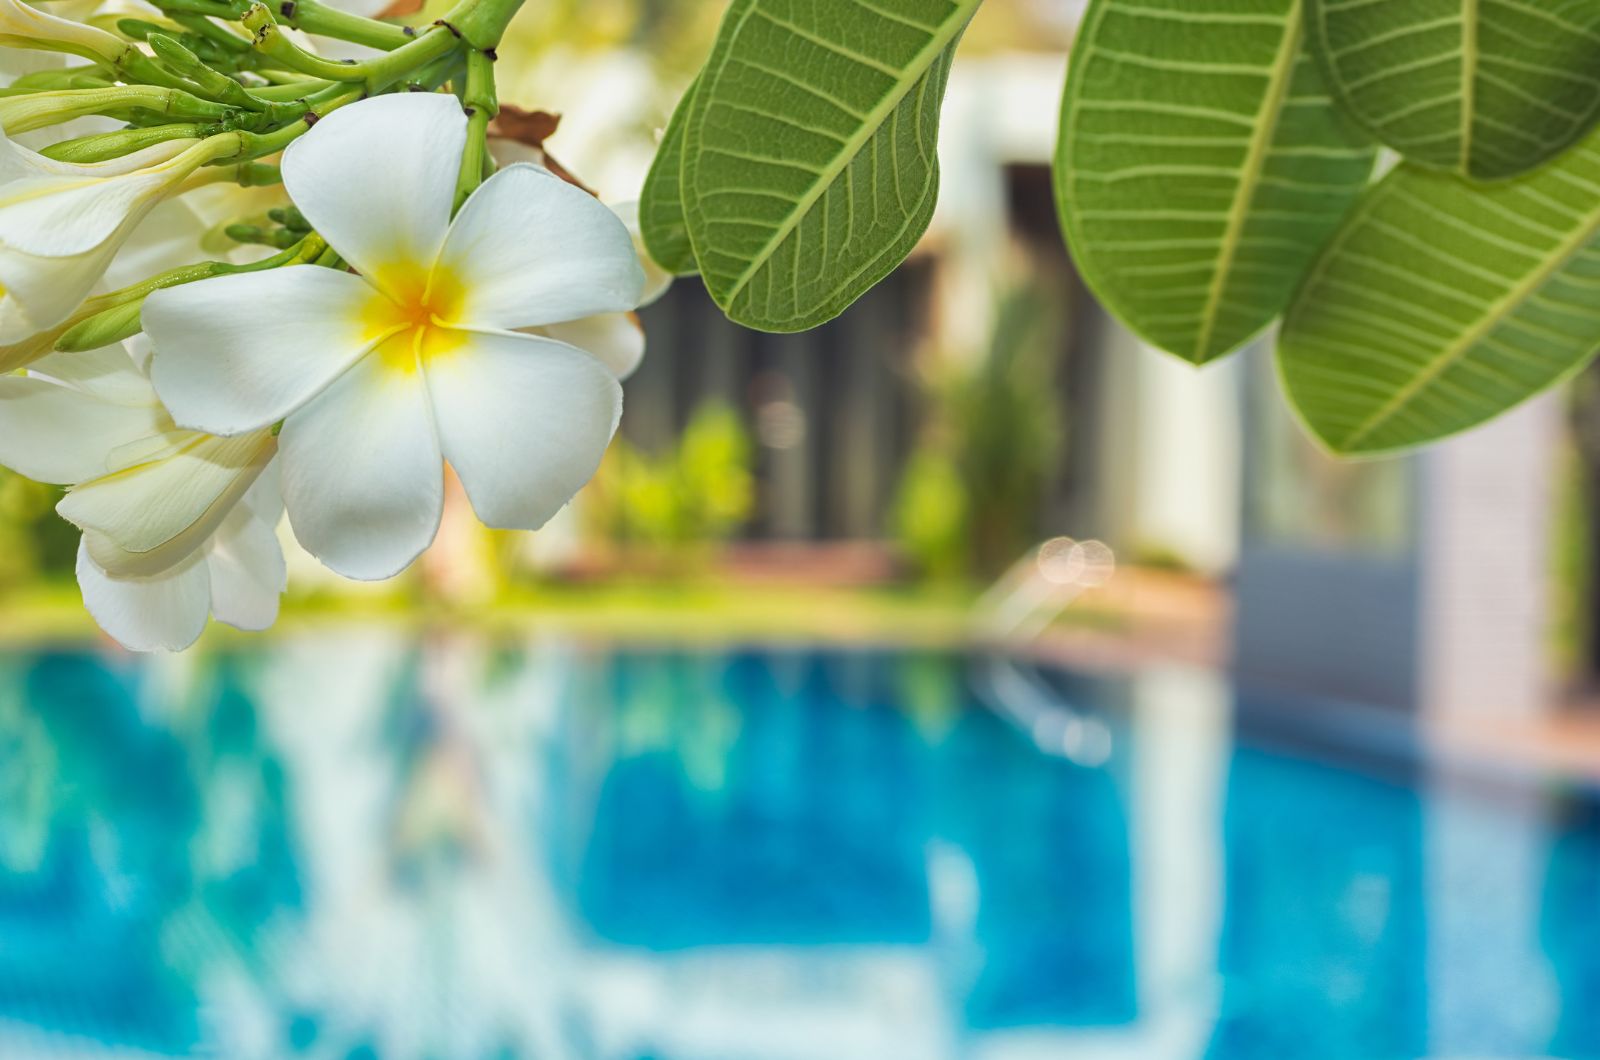 frangipani blossom in the pool area